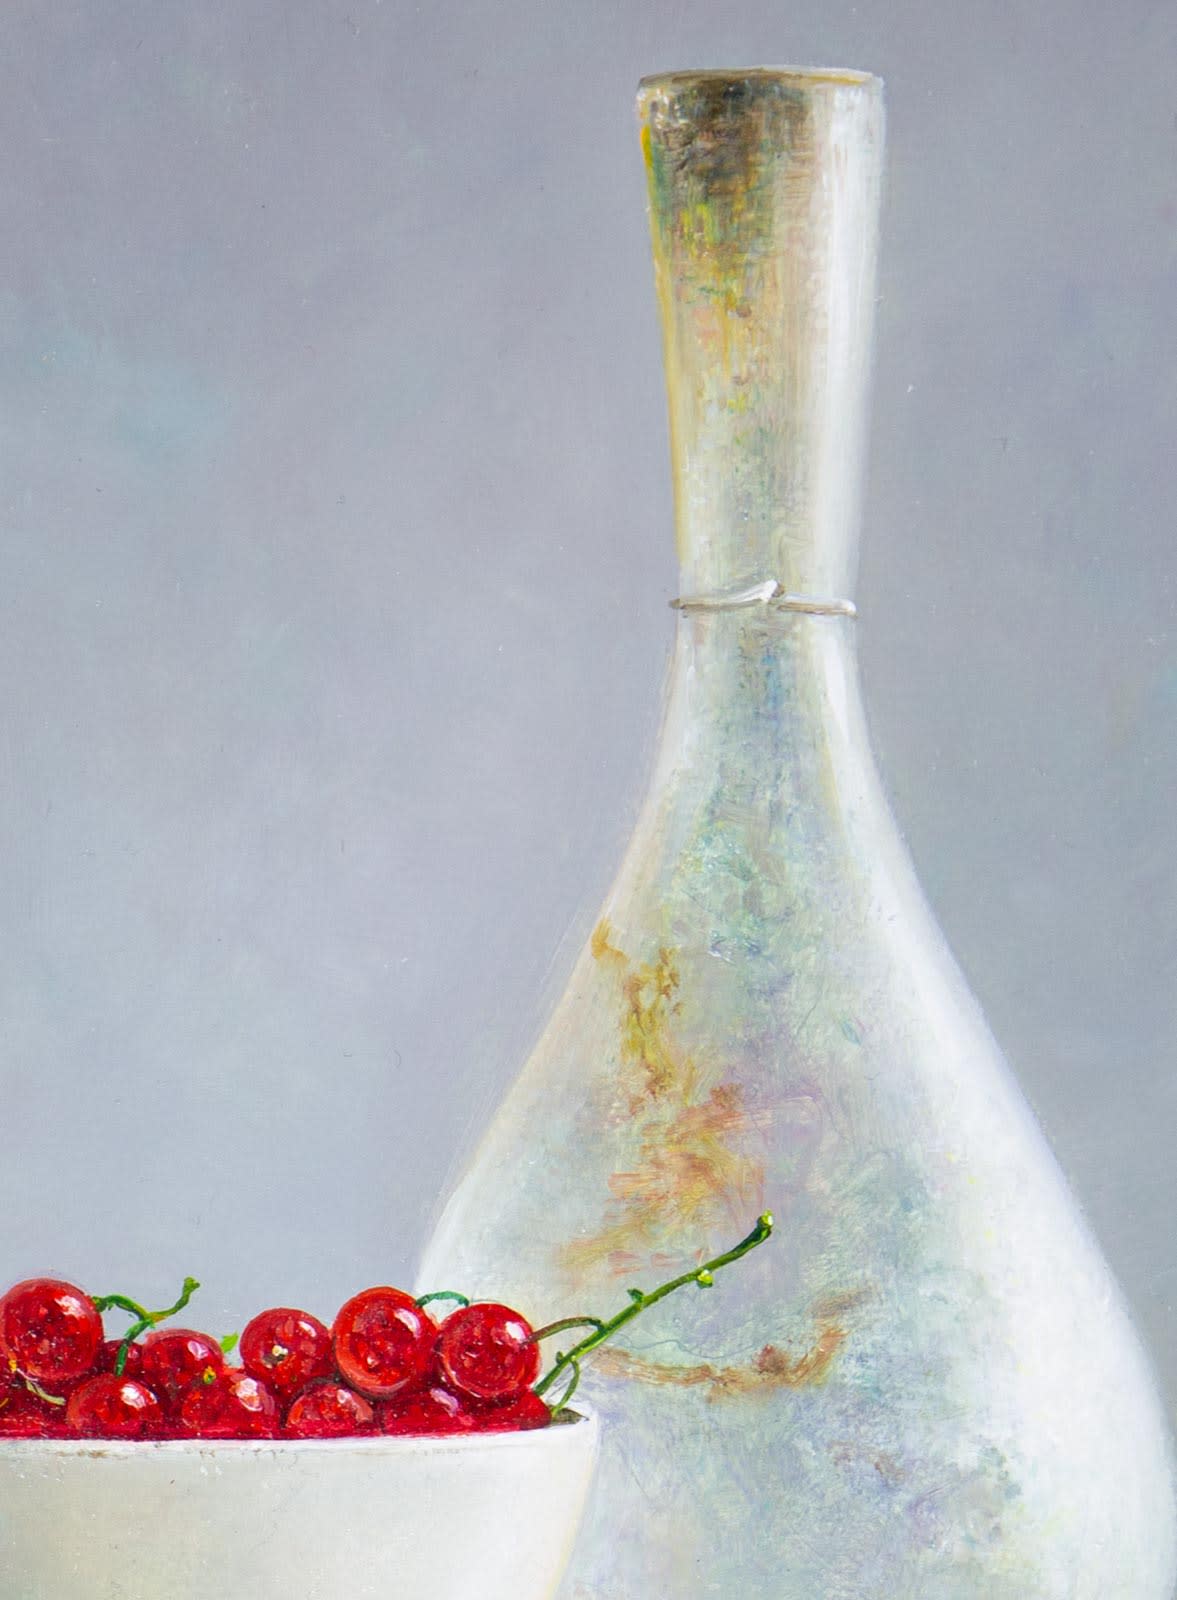 Redcurrants With Vase